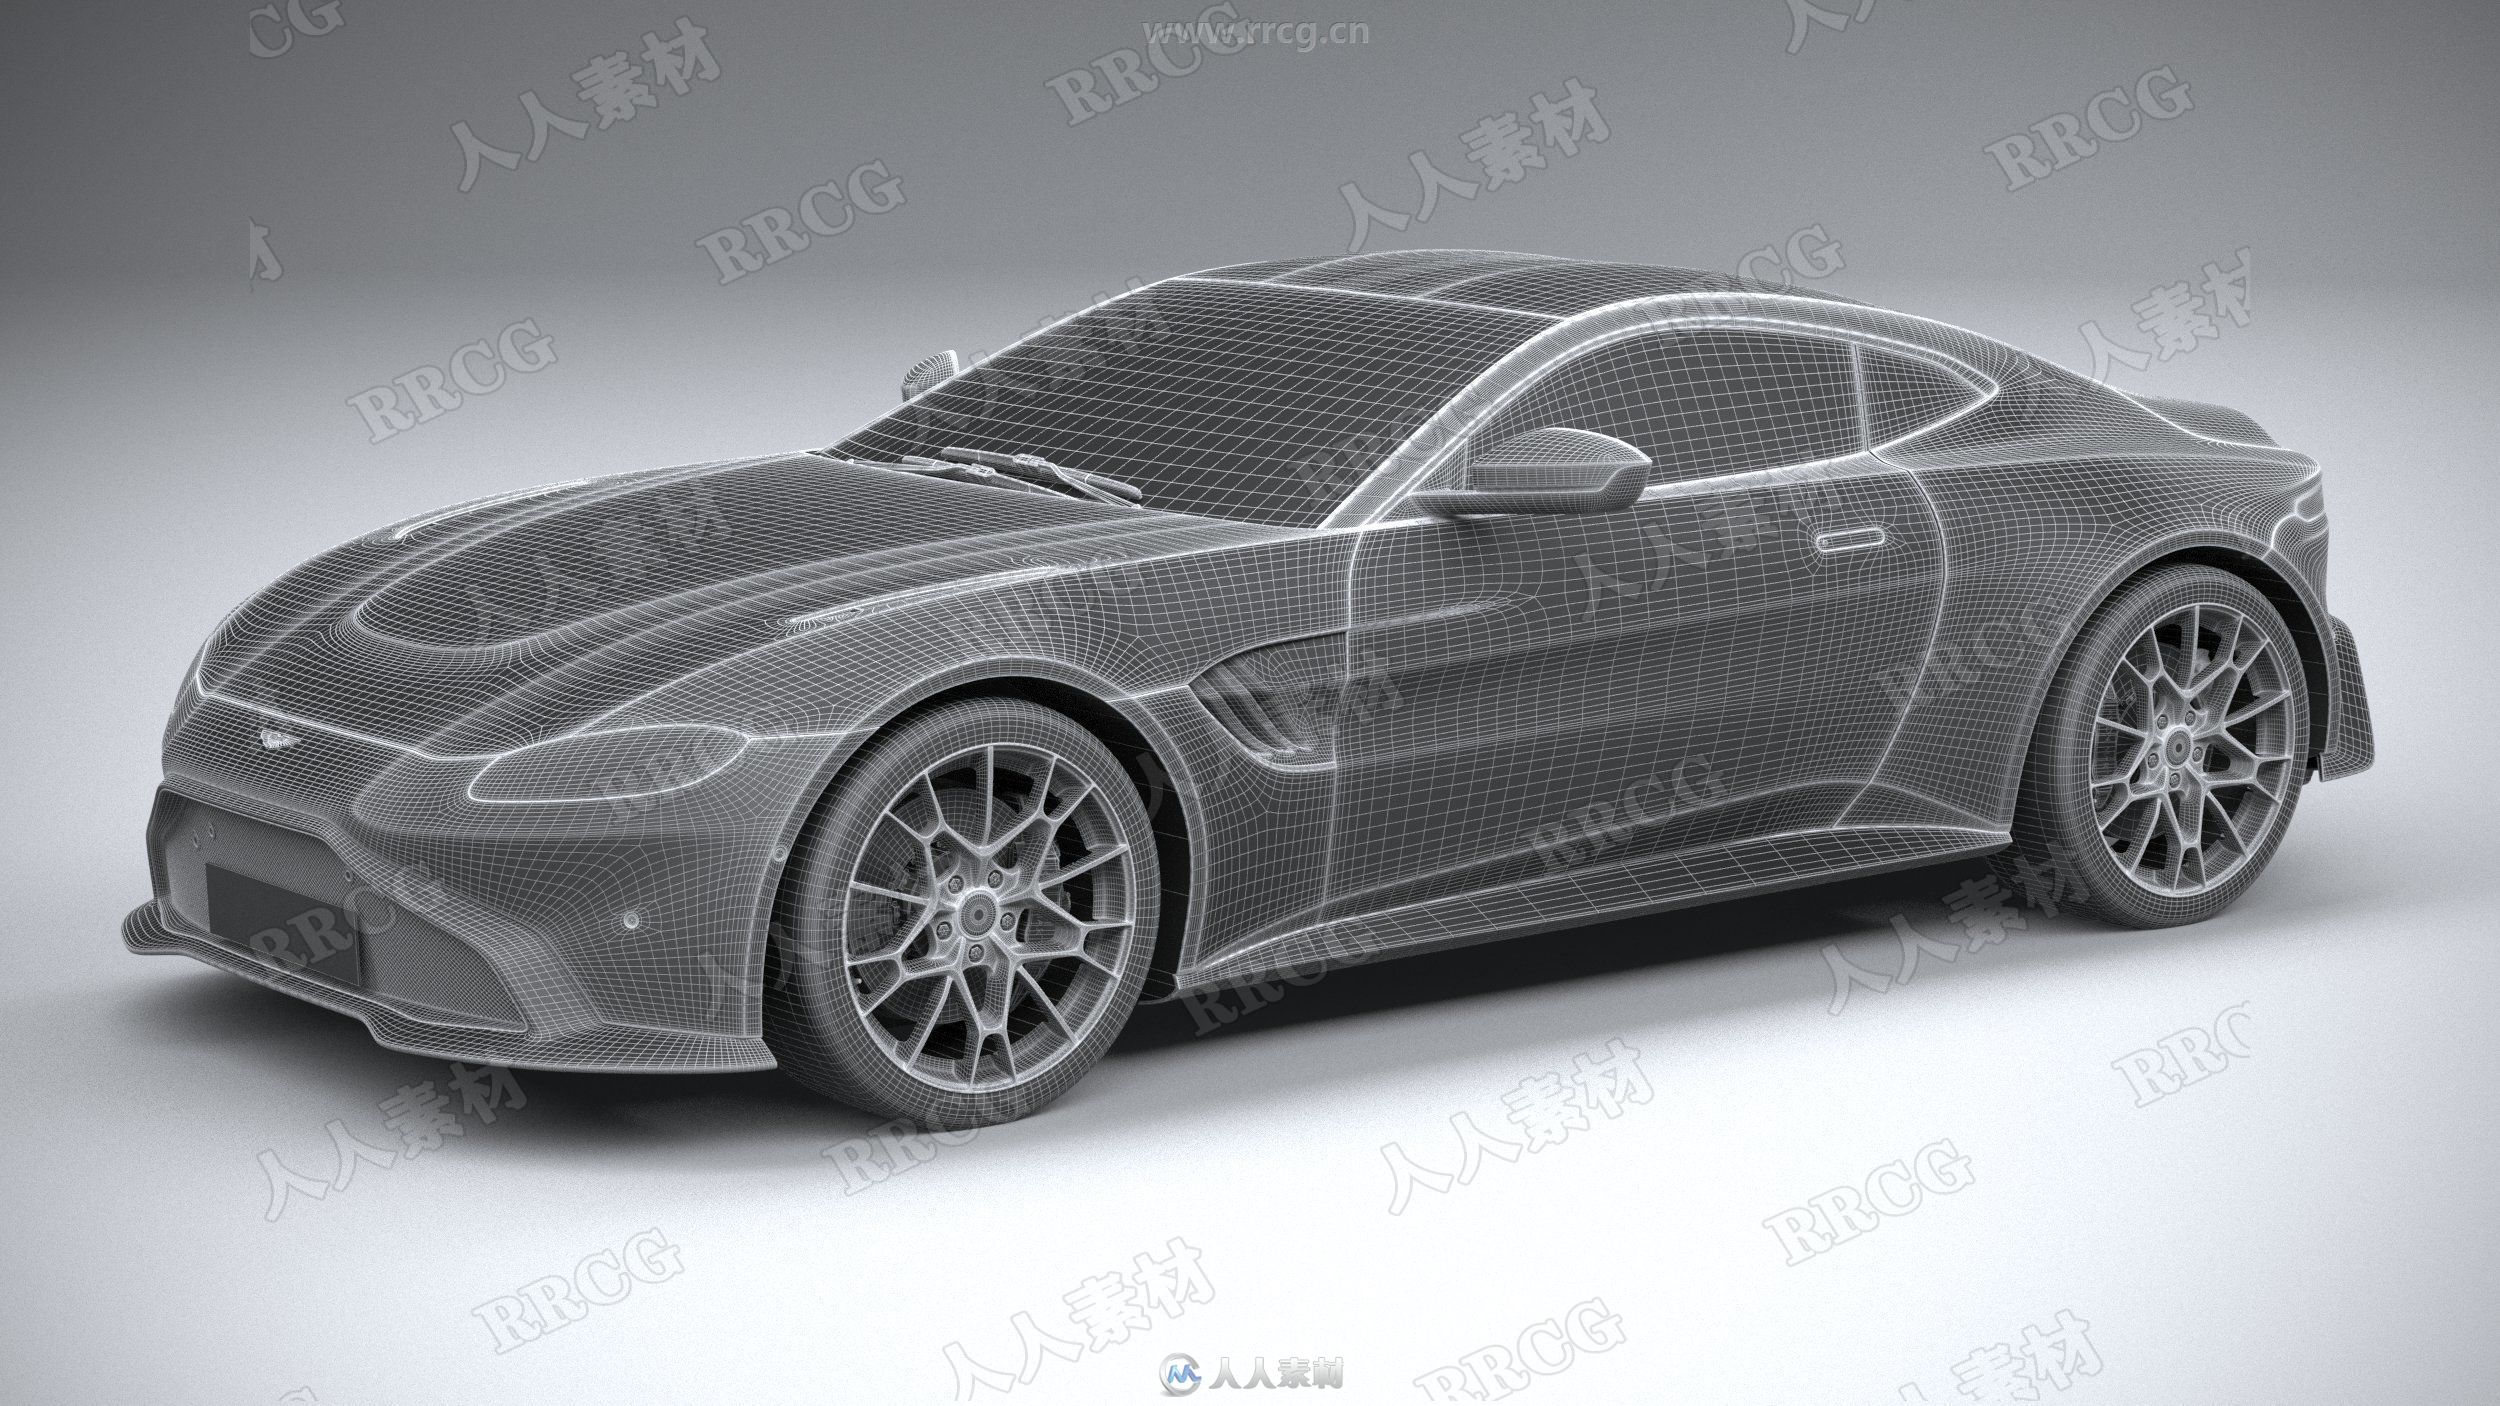 阿斯顿马丁超跑Aston Martin Vantage真实汽车高质量3D模型